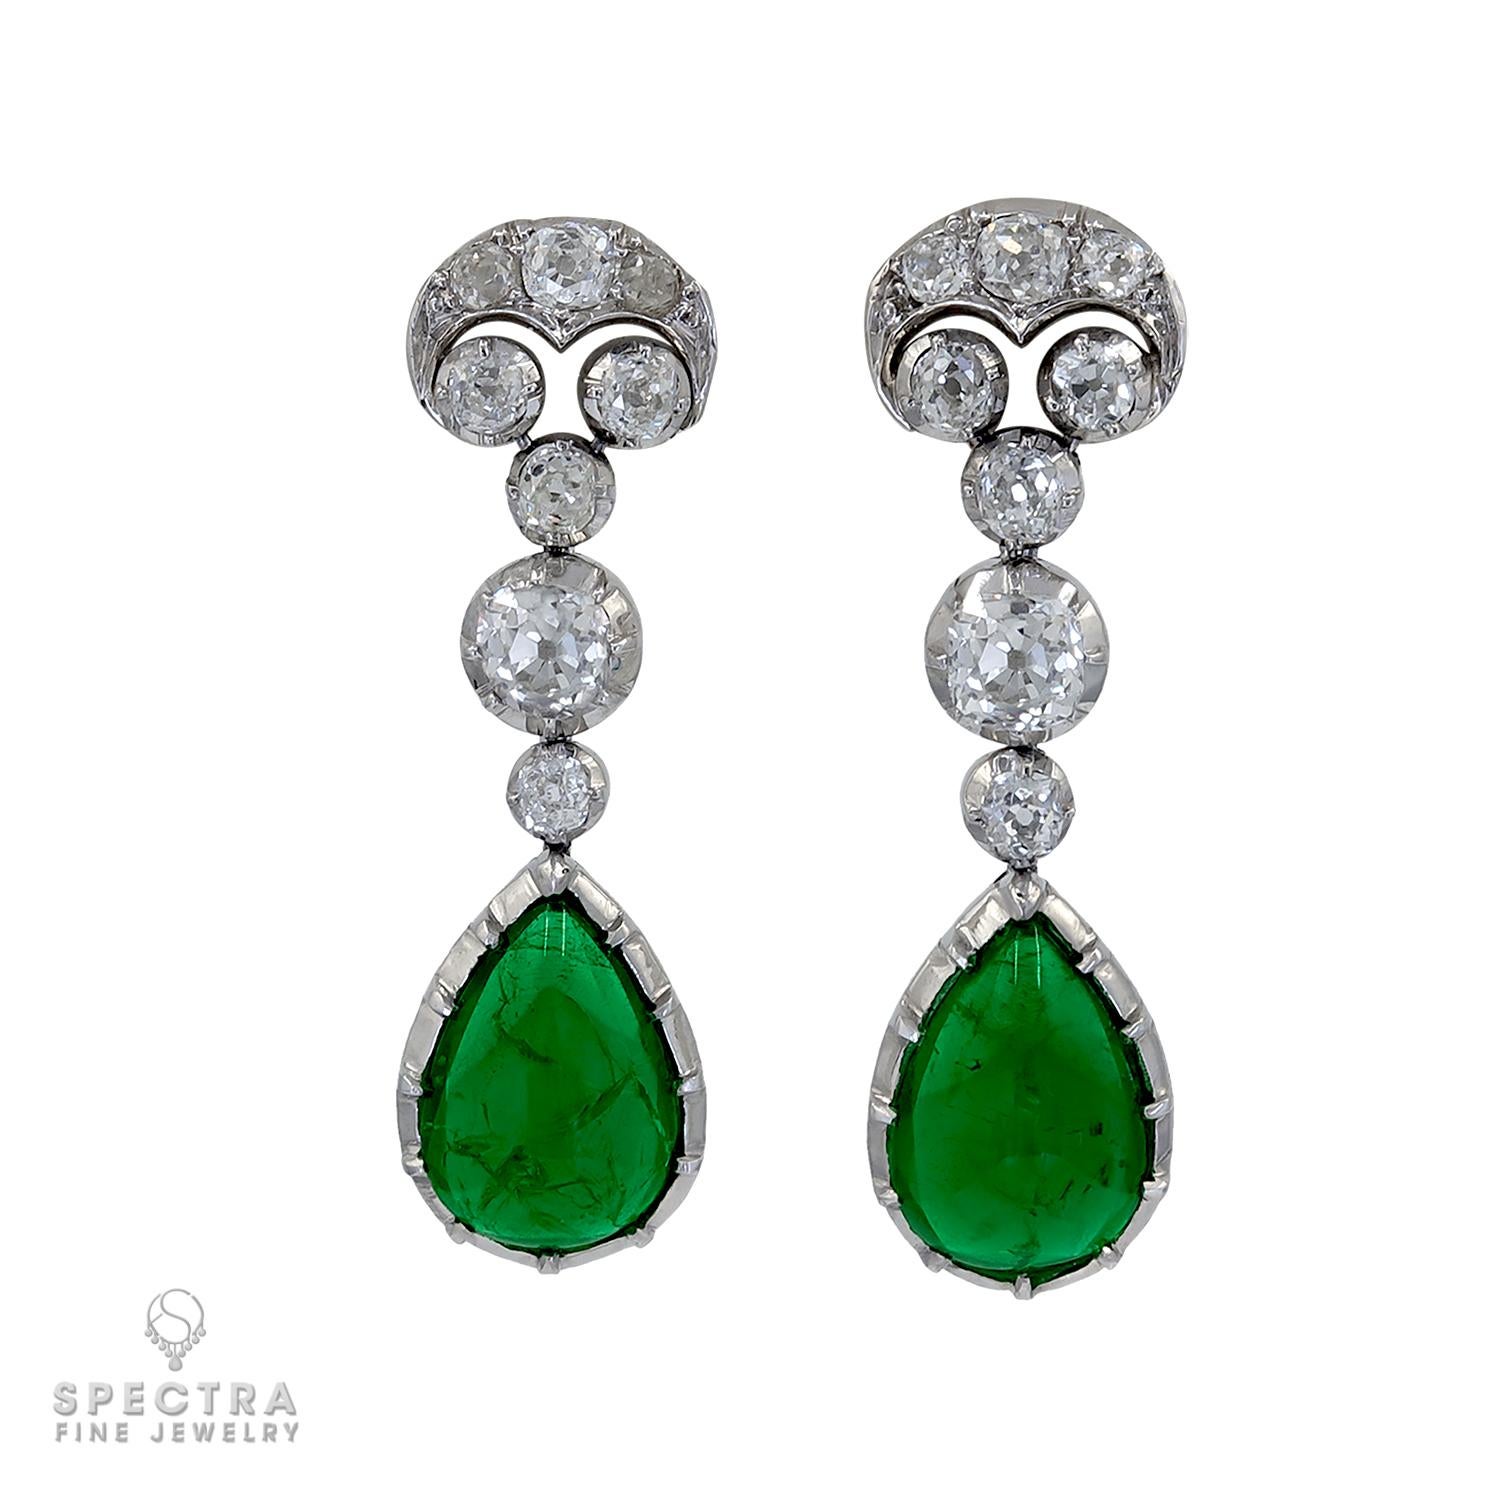 Ces boucles d'oreilles Vintage Art Deco Diamond Emerald Drop Earrings, fabriquées pendant l'ère Art Deco, ont toute l'allure d'un temps passé. Le design trouve ses racines dans la joaillerie géorgienne et victorienne, mais a été introduit dans la